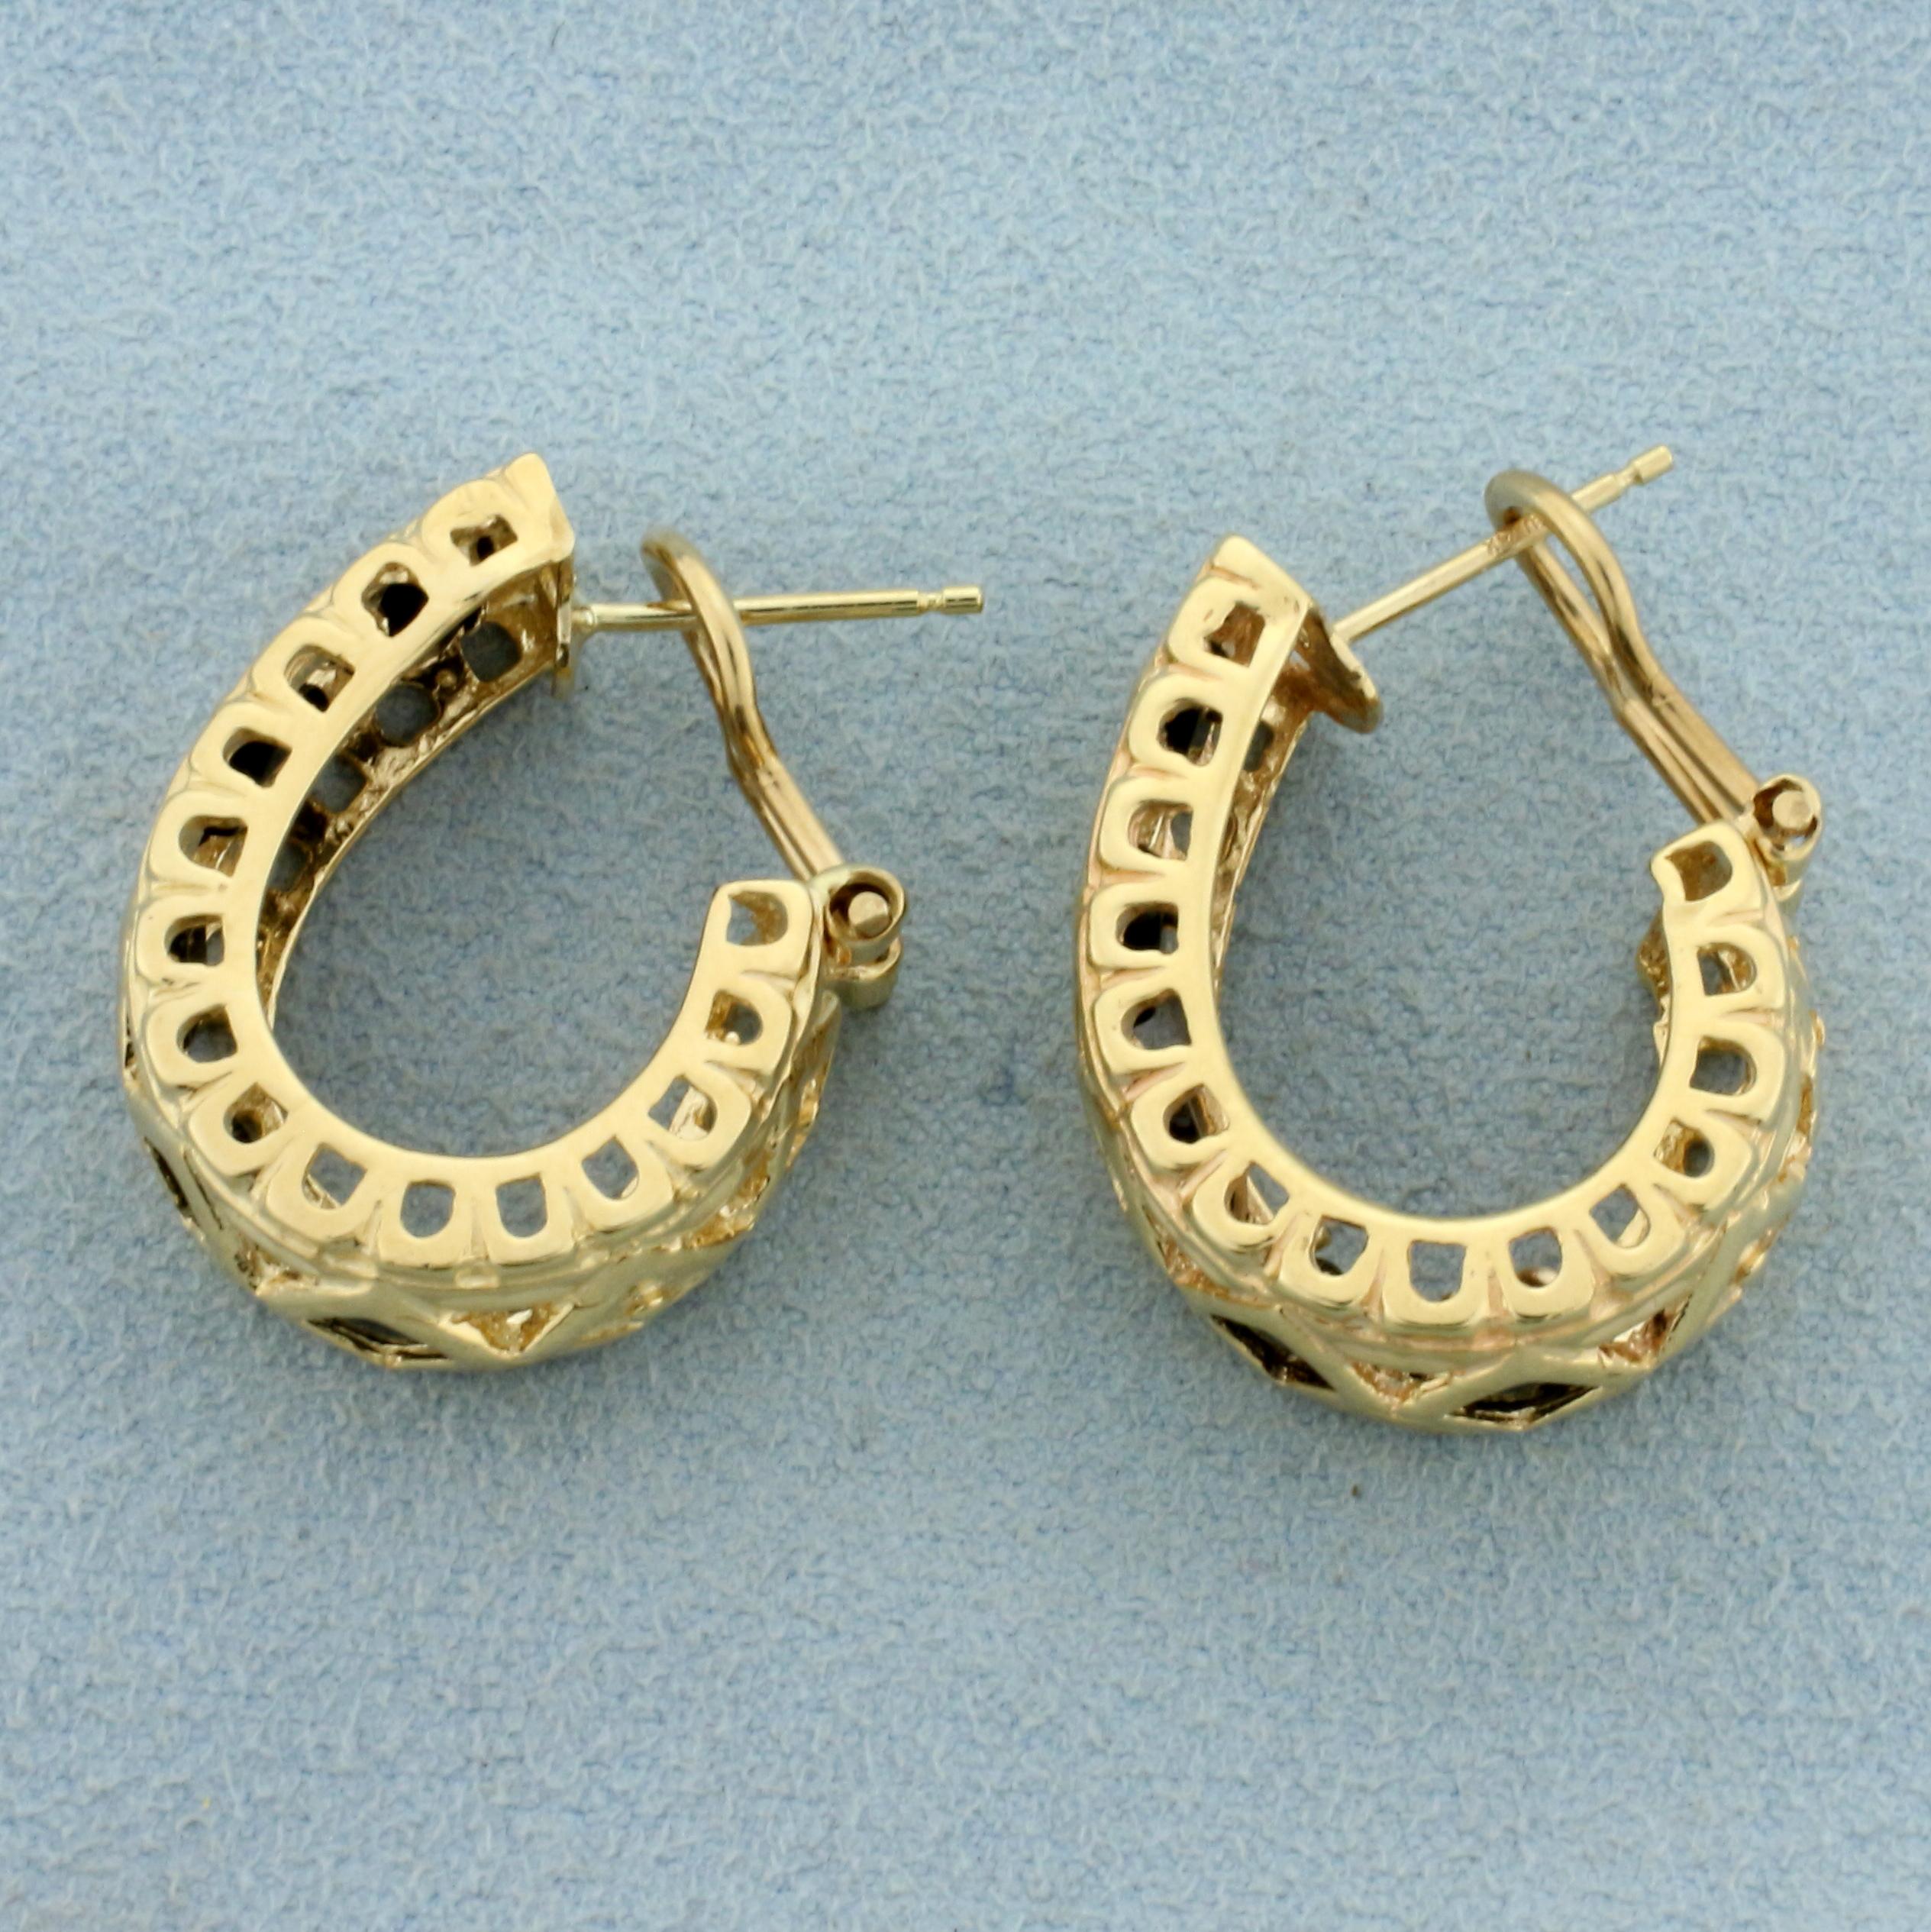 Vintage Onyx J Hoop Earrings In 14k Yellow Gold